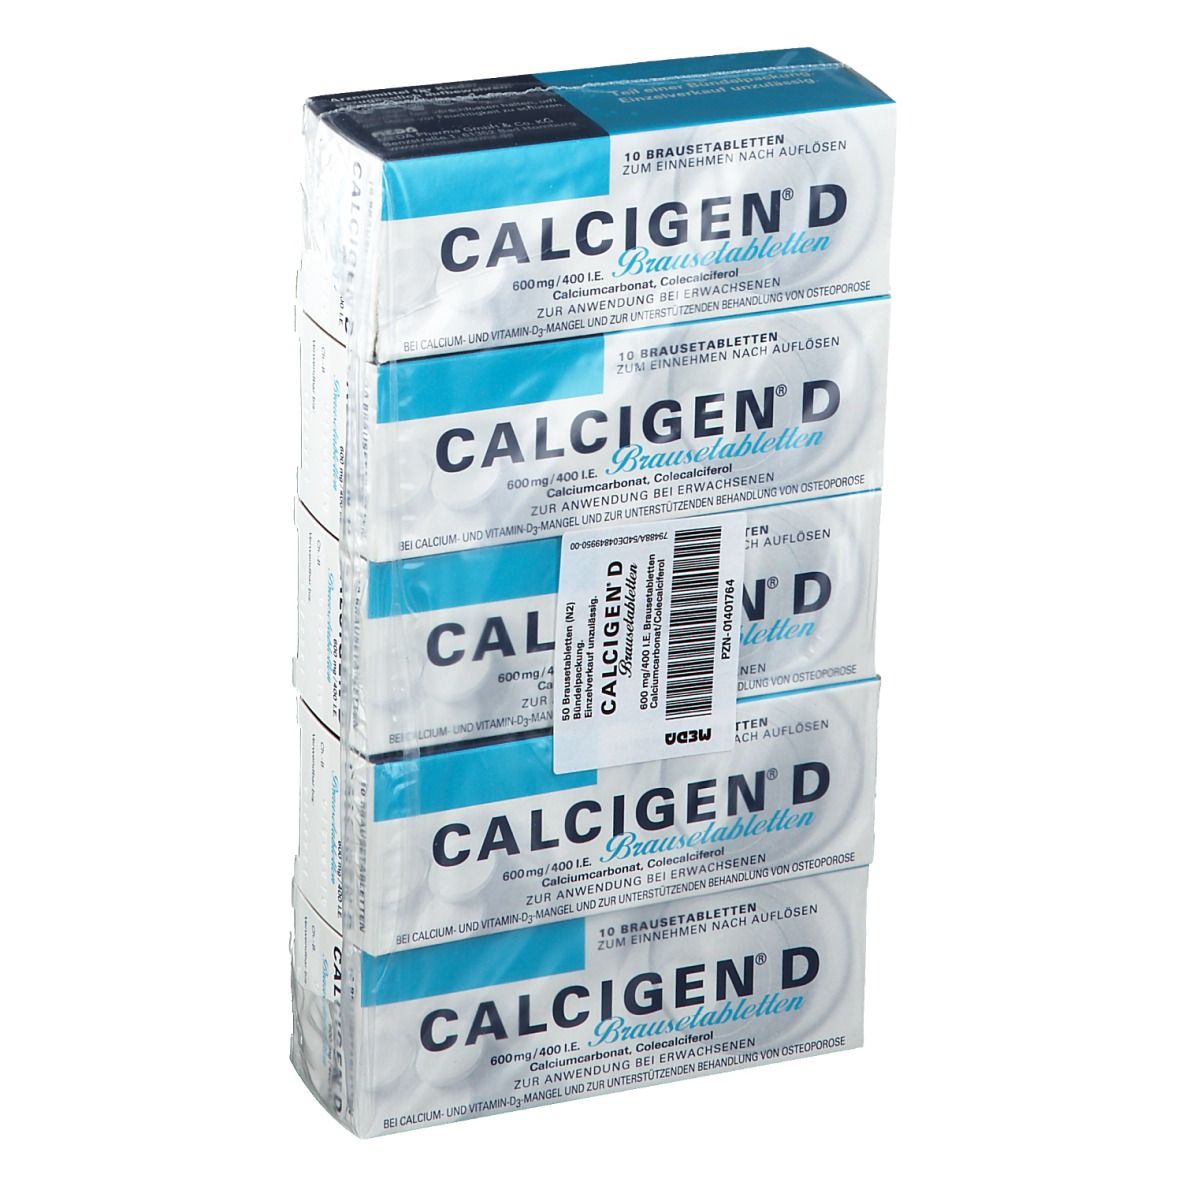 Calcigen D 600 mg/400 I.e. Brausetabletten